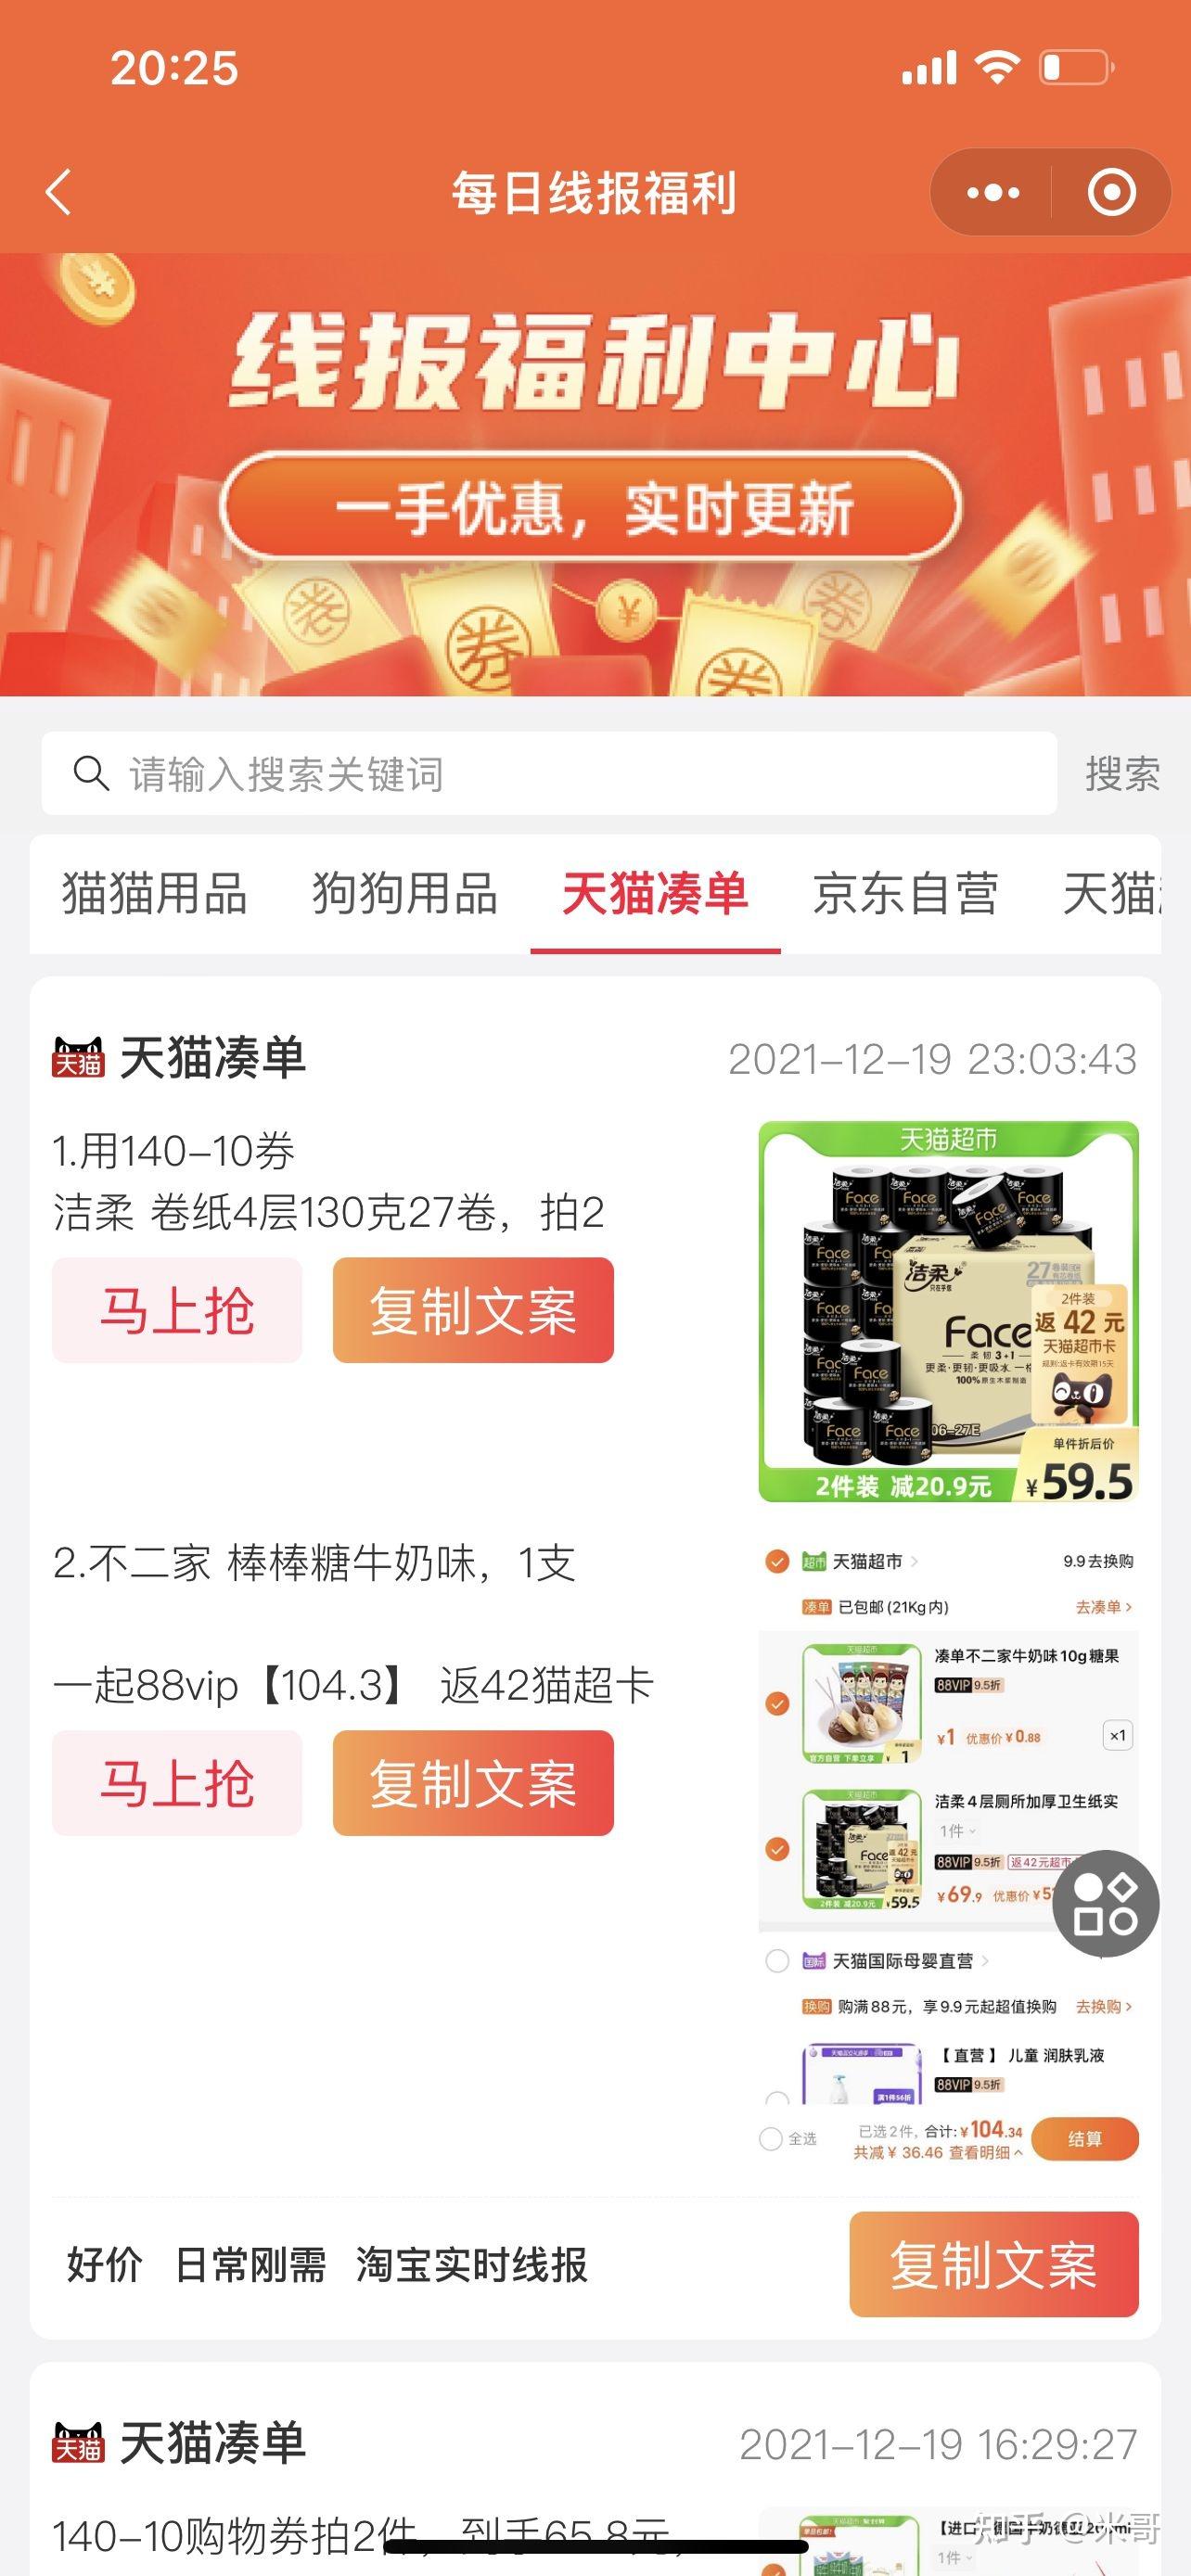 X报 - 广东移动最多100元话费 -京东优惠券、薅羊毛线报网站